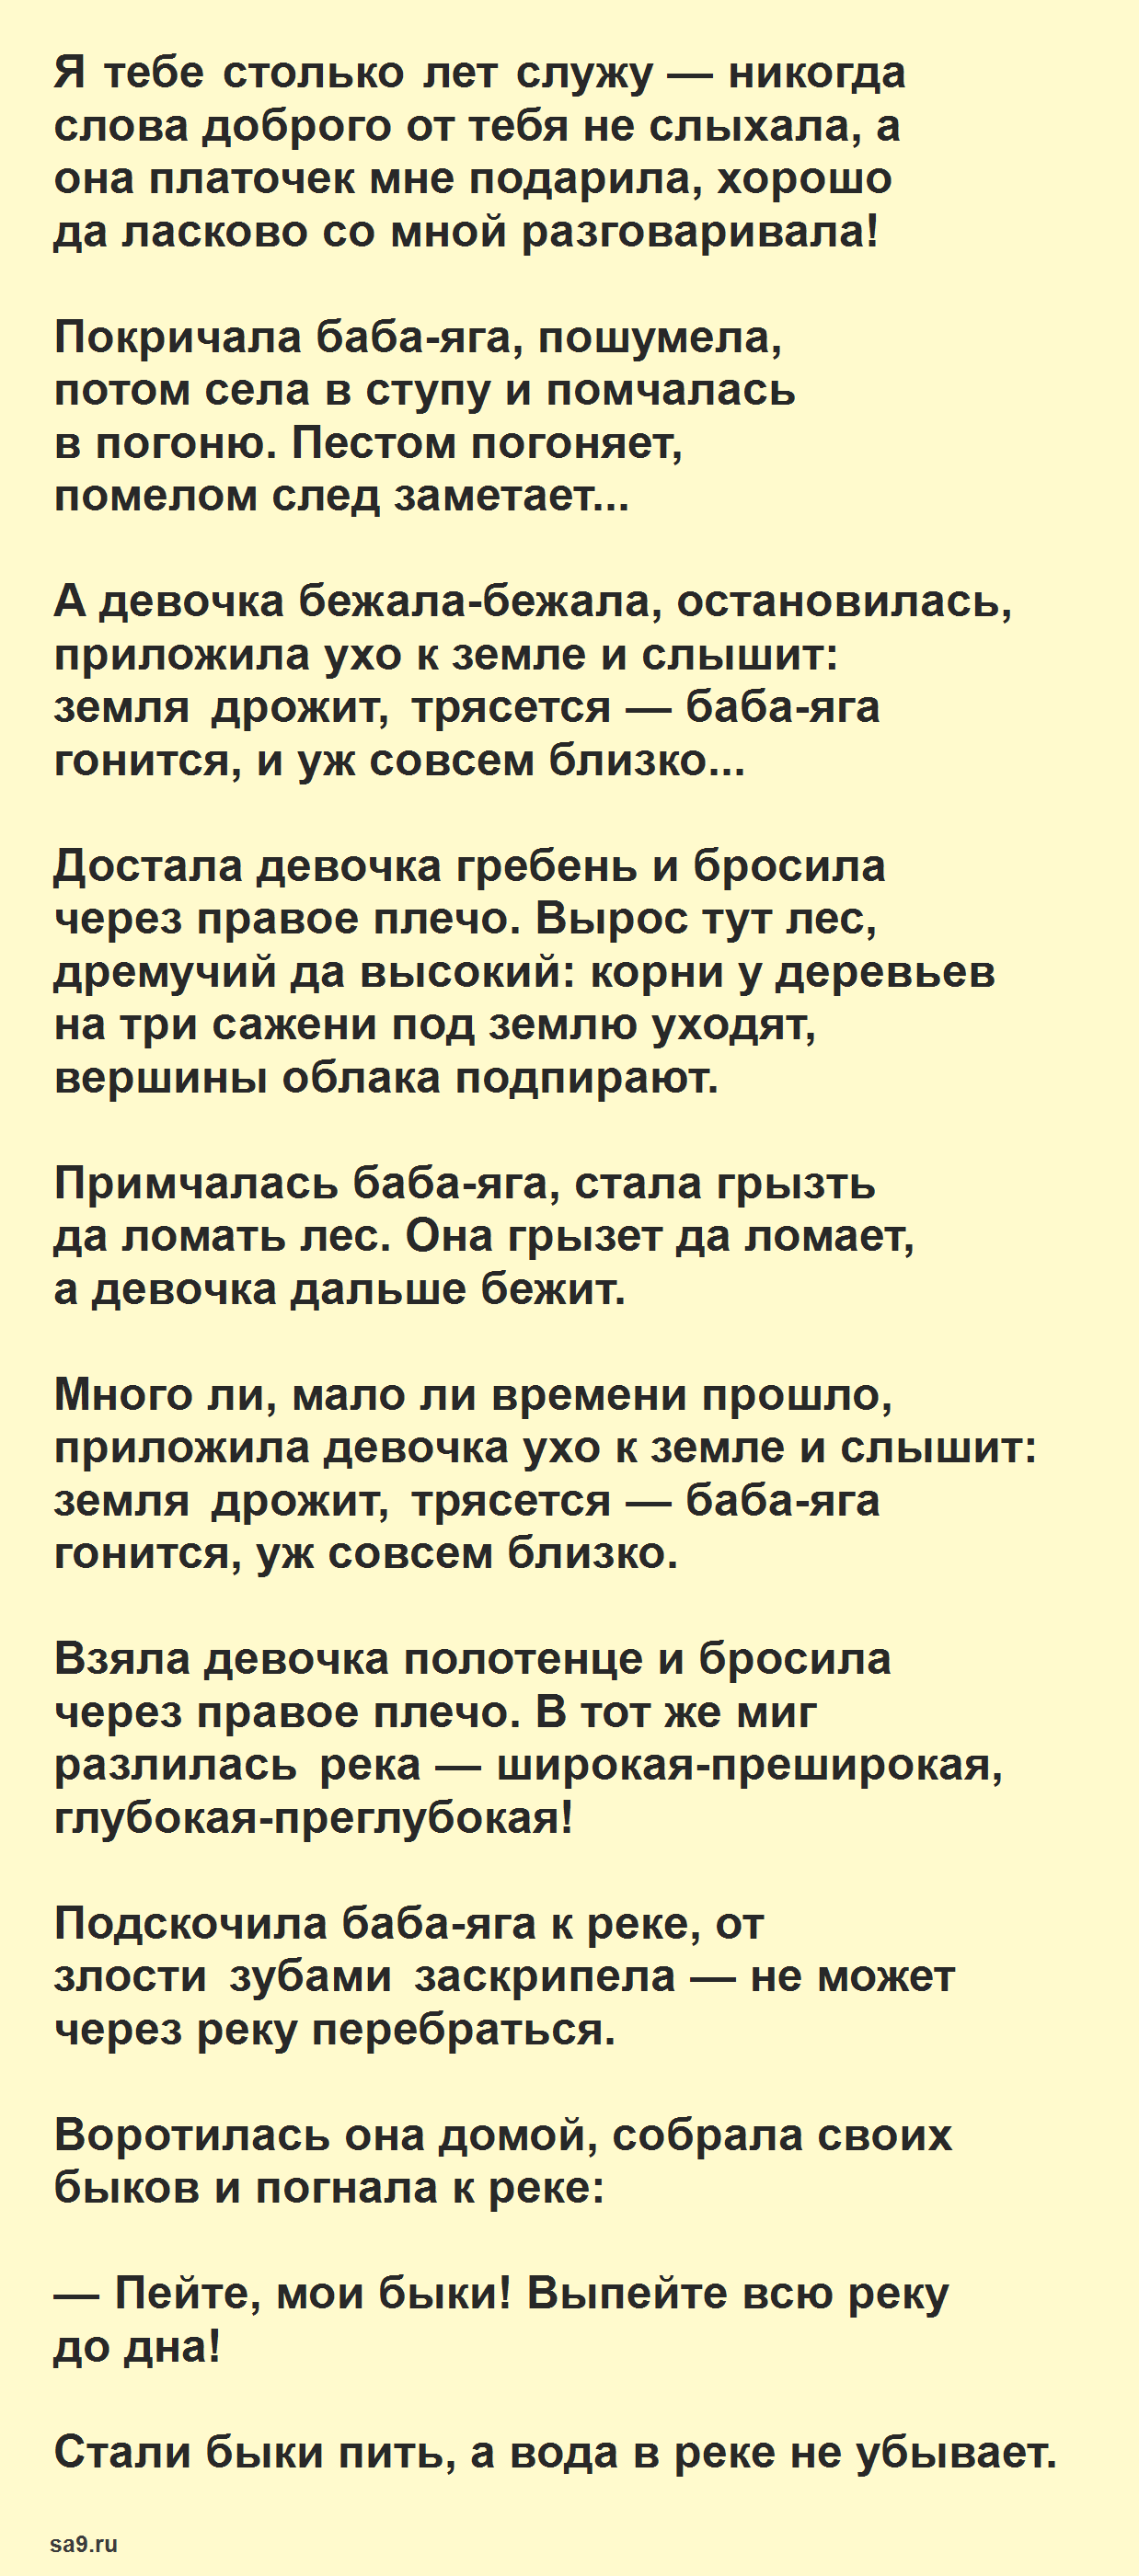 Баба-яга - русская народная сказка